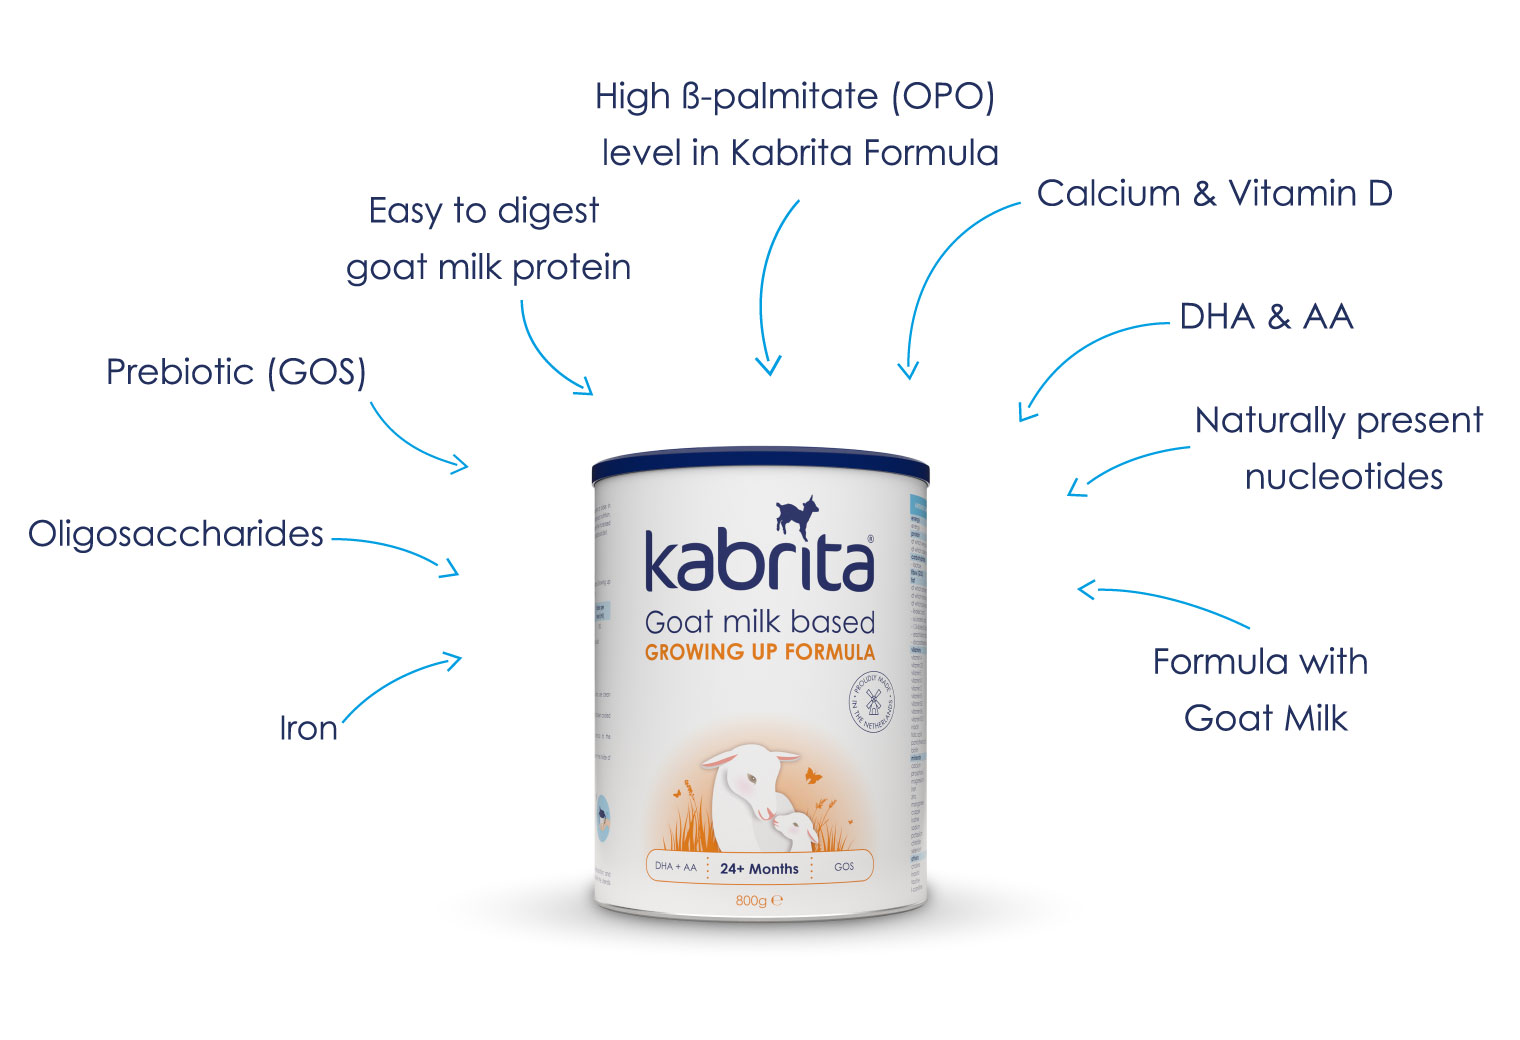 Kabrita combines this natural gentleness of goat milk